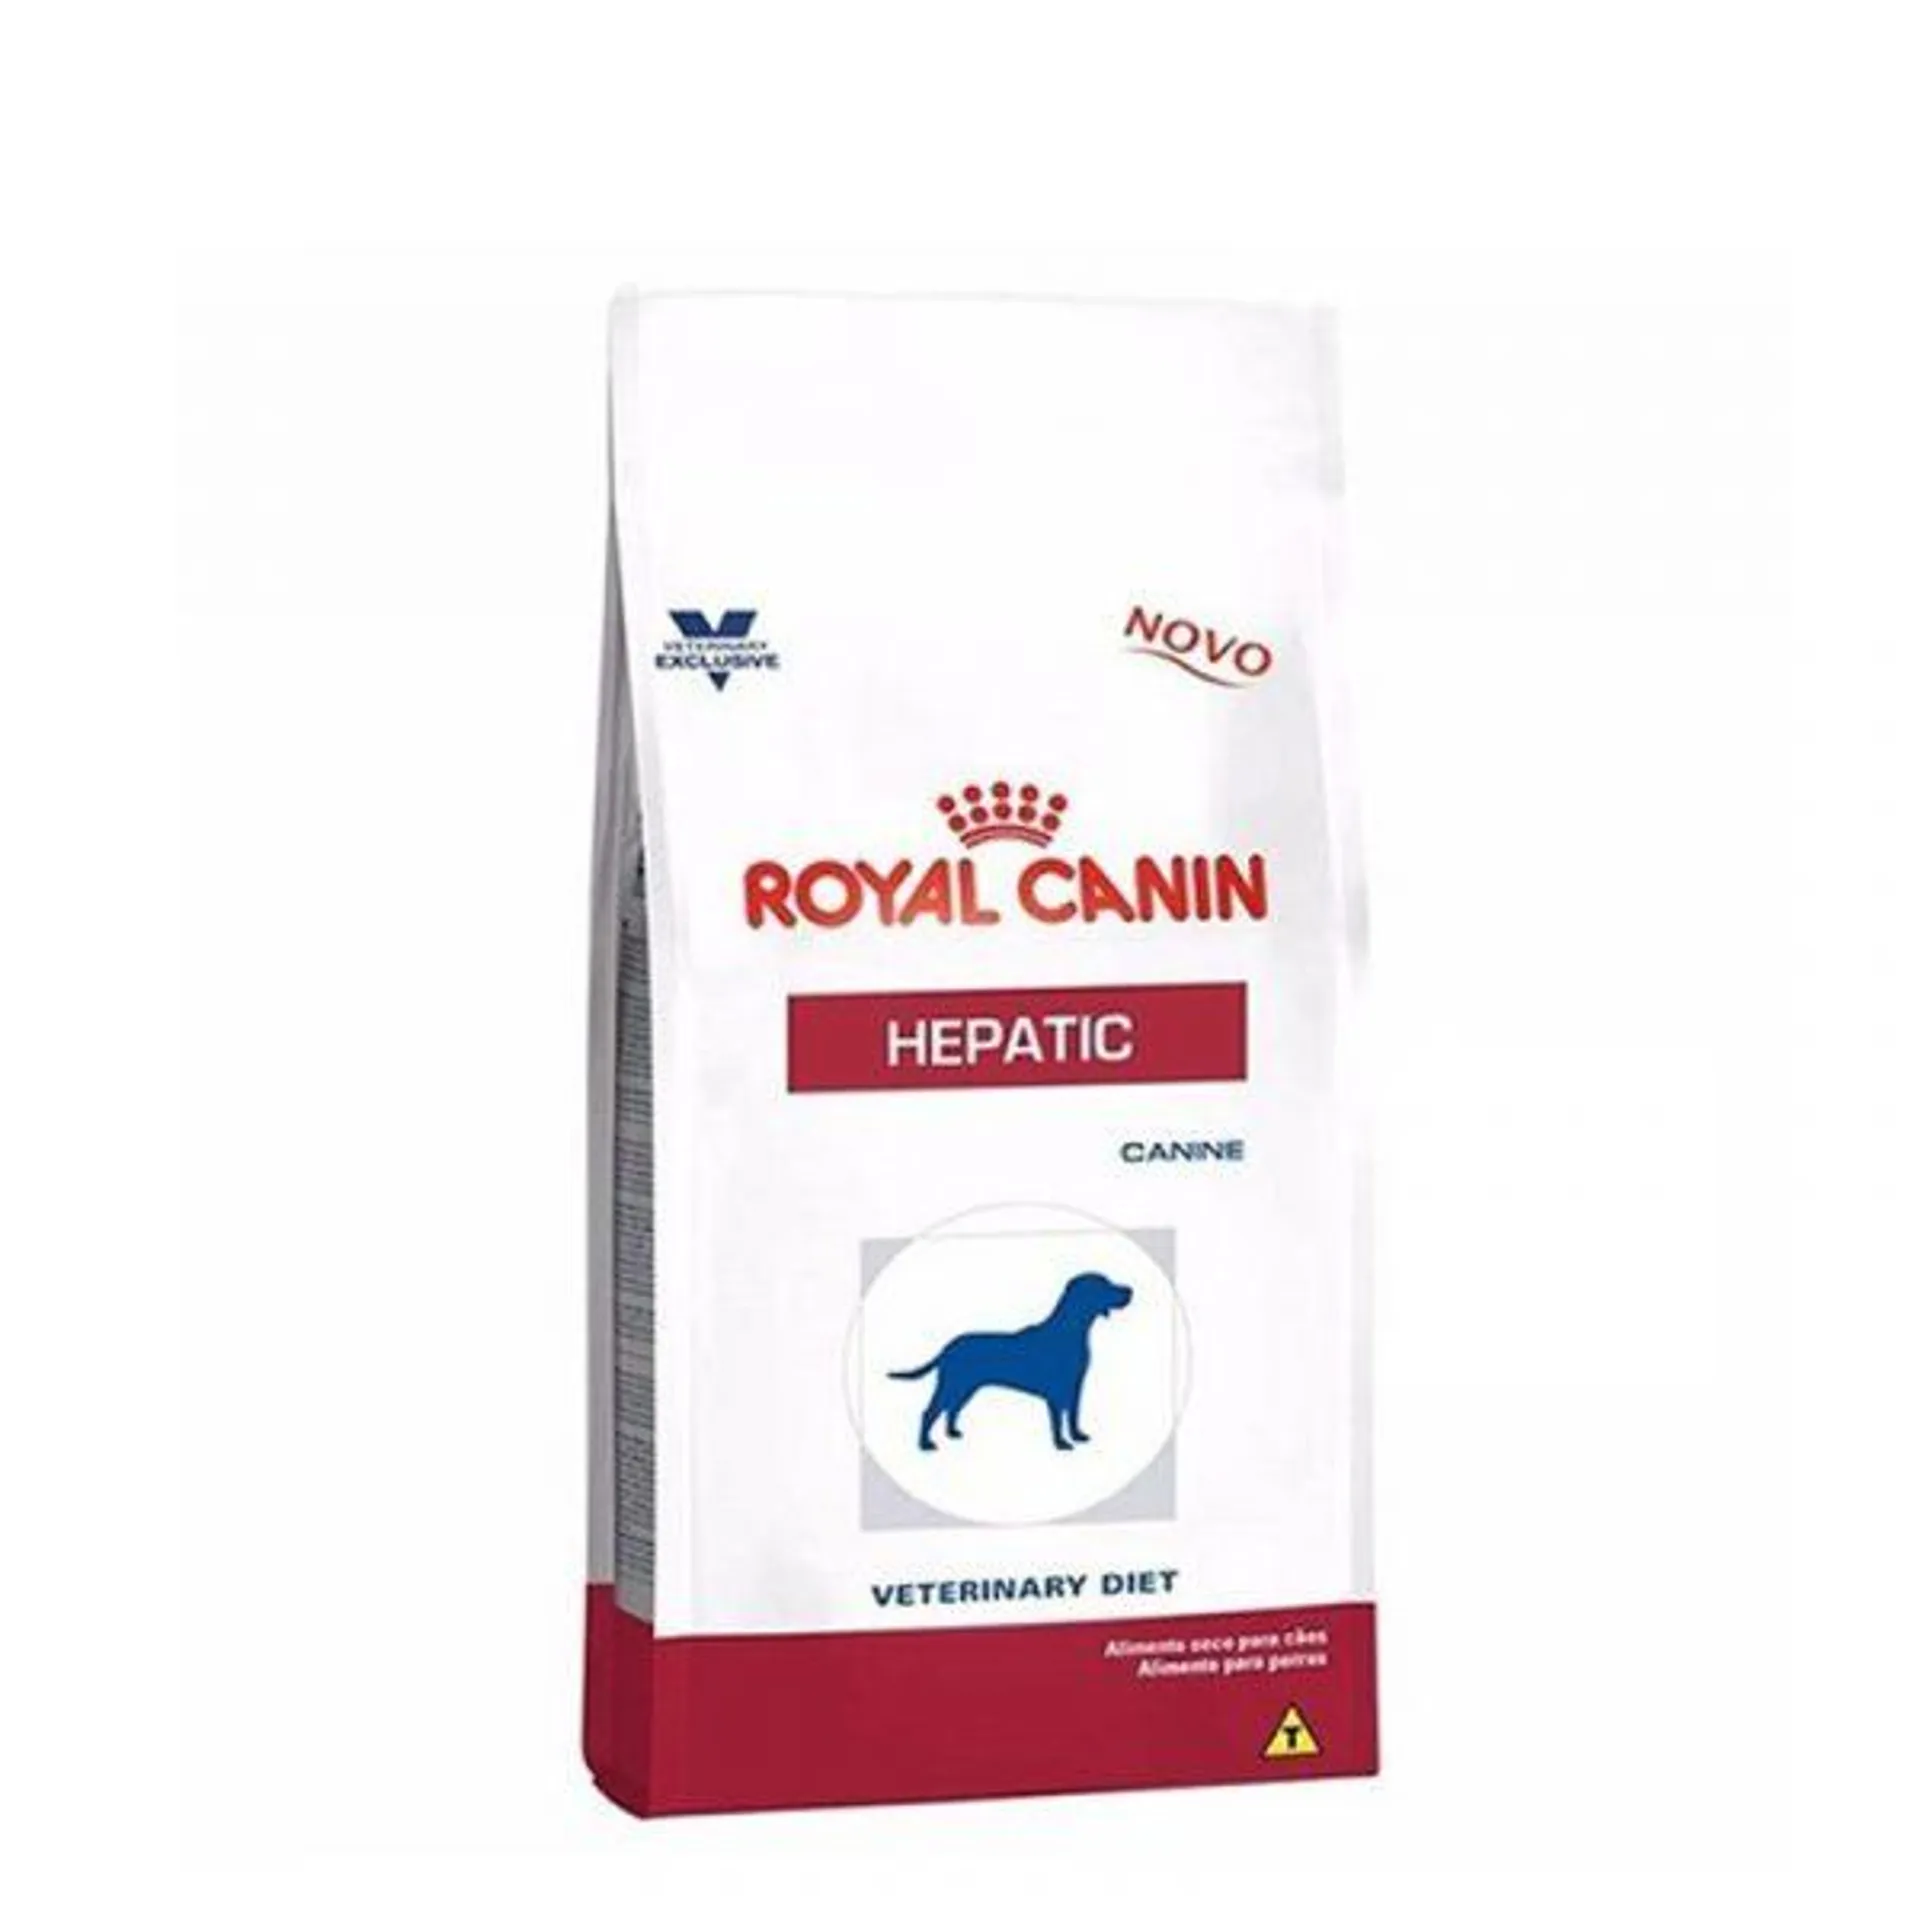 Royal Canin Med Dog Hepatic 1.5Kg